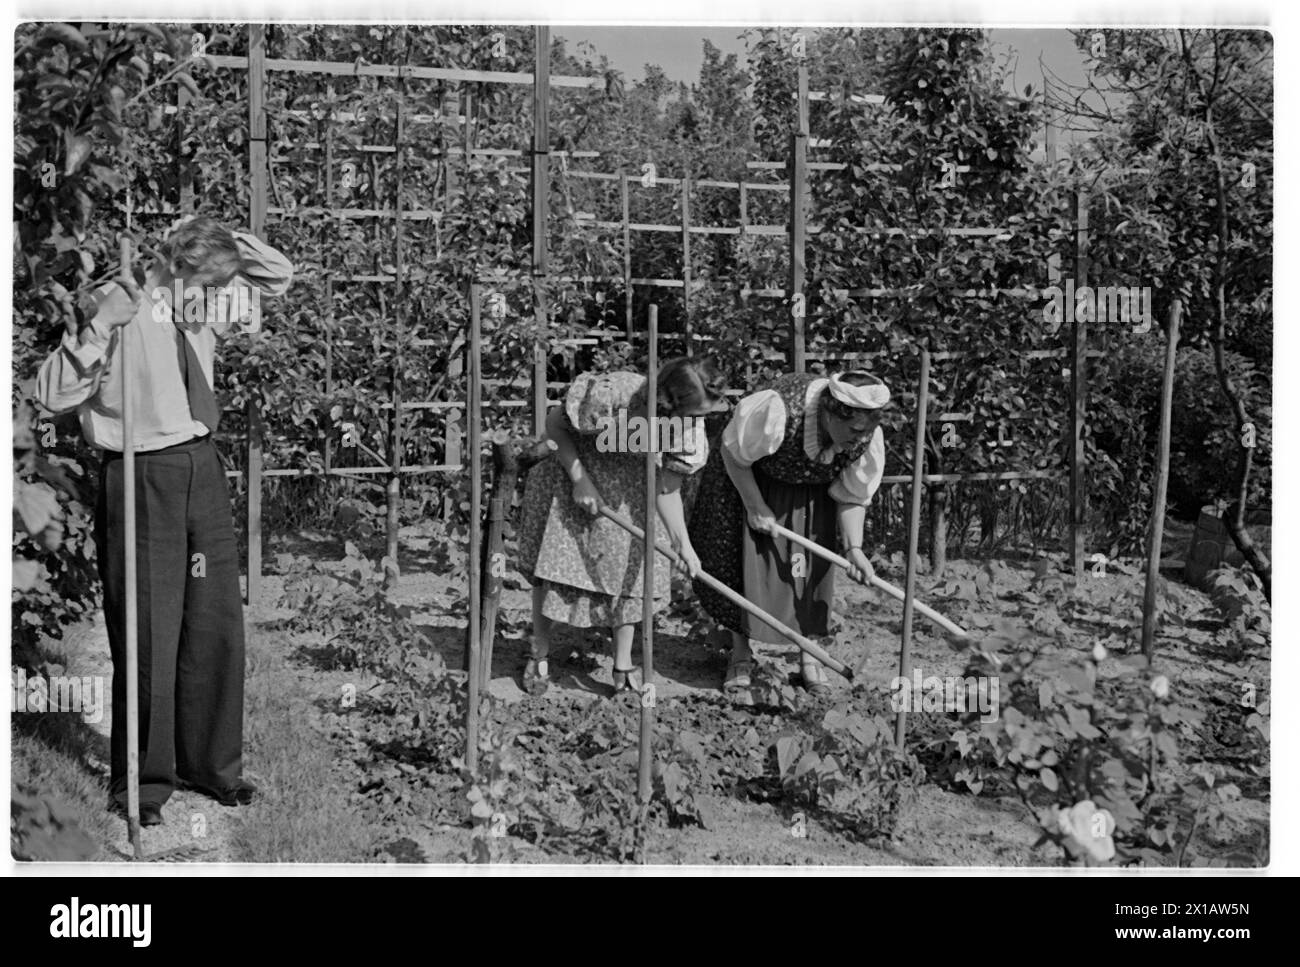 Annie Rosar dans le jardin de lotissement, sur le jardinage. - 19400624 PD0013 - Rechteinfo : droits gérés (RM) Banque D'Images